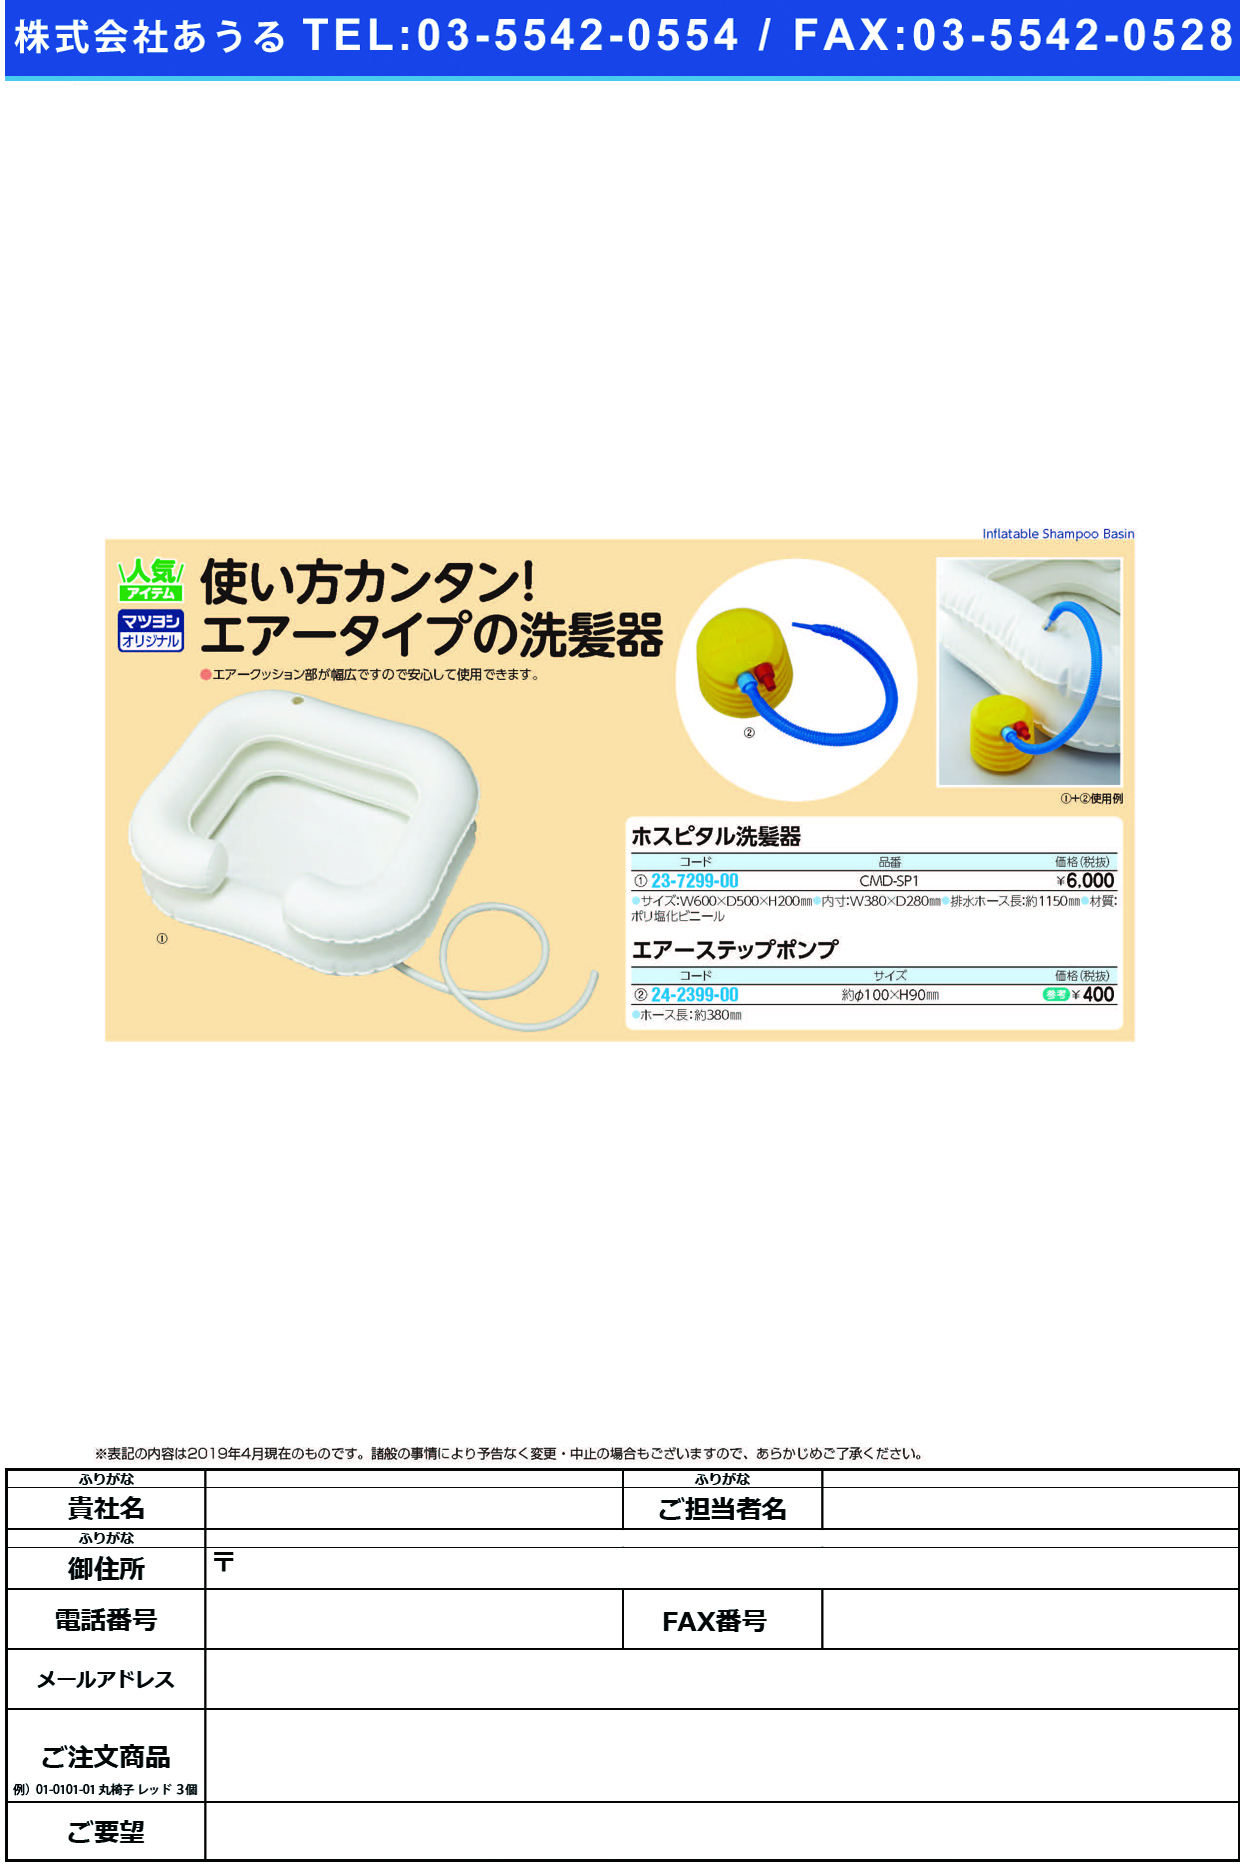 (23-7299-00)ホスピタル洗髪器 CMD-SP1 ﾎｽﾋﾟﾀﾙｾﾝﾊﾟﾂｷ【1個単位】【2019年カタログ商品】